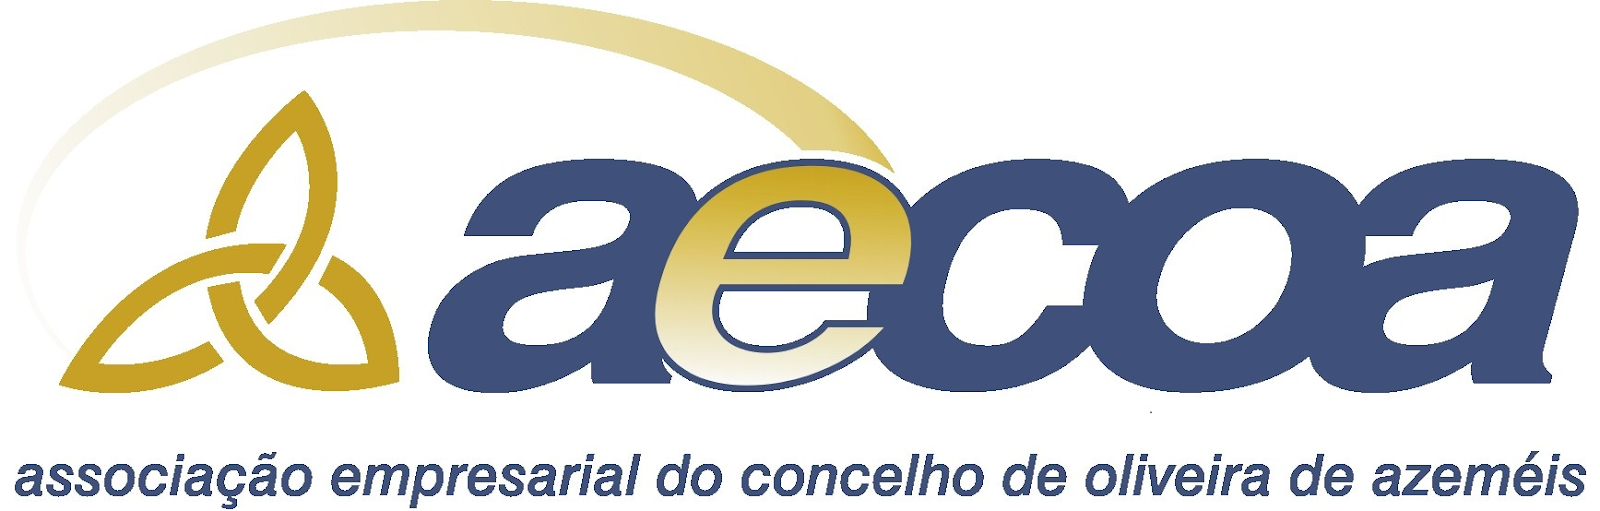 Associação Empresarial do Concelho de Oliveira de Azeméis (AECOA)